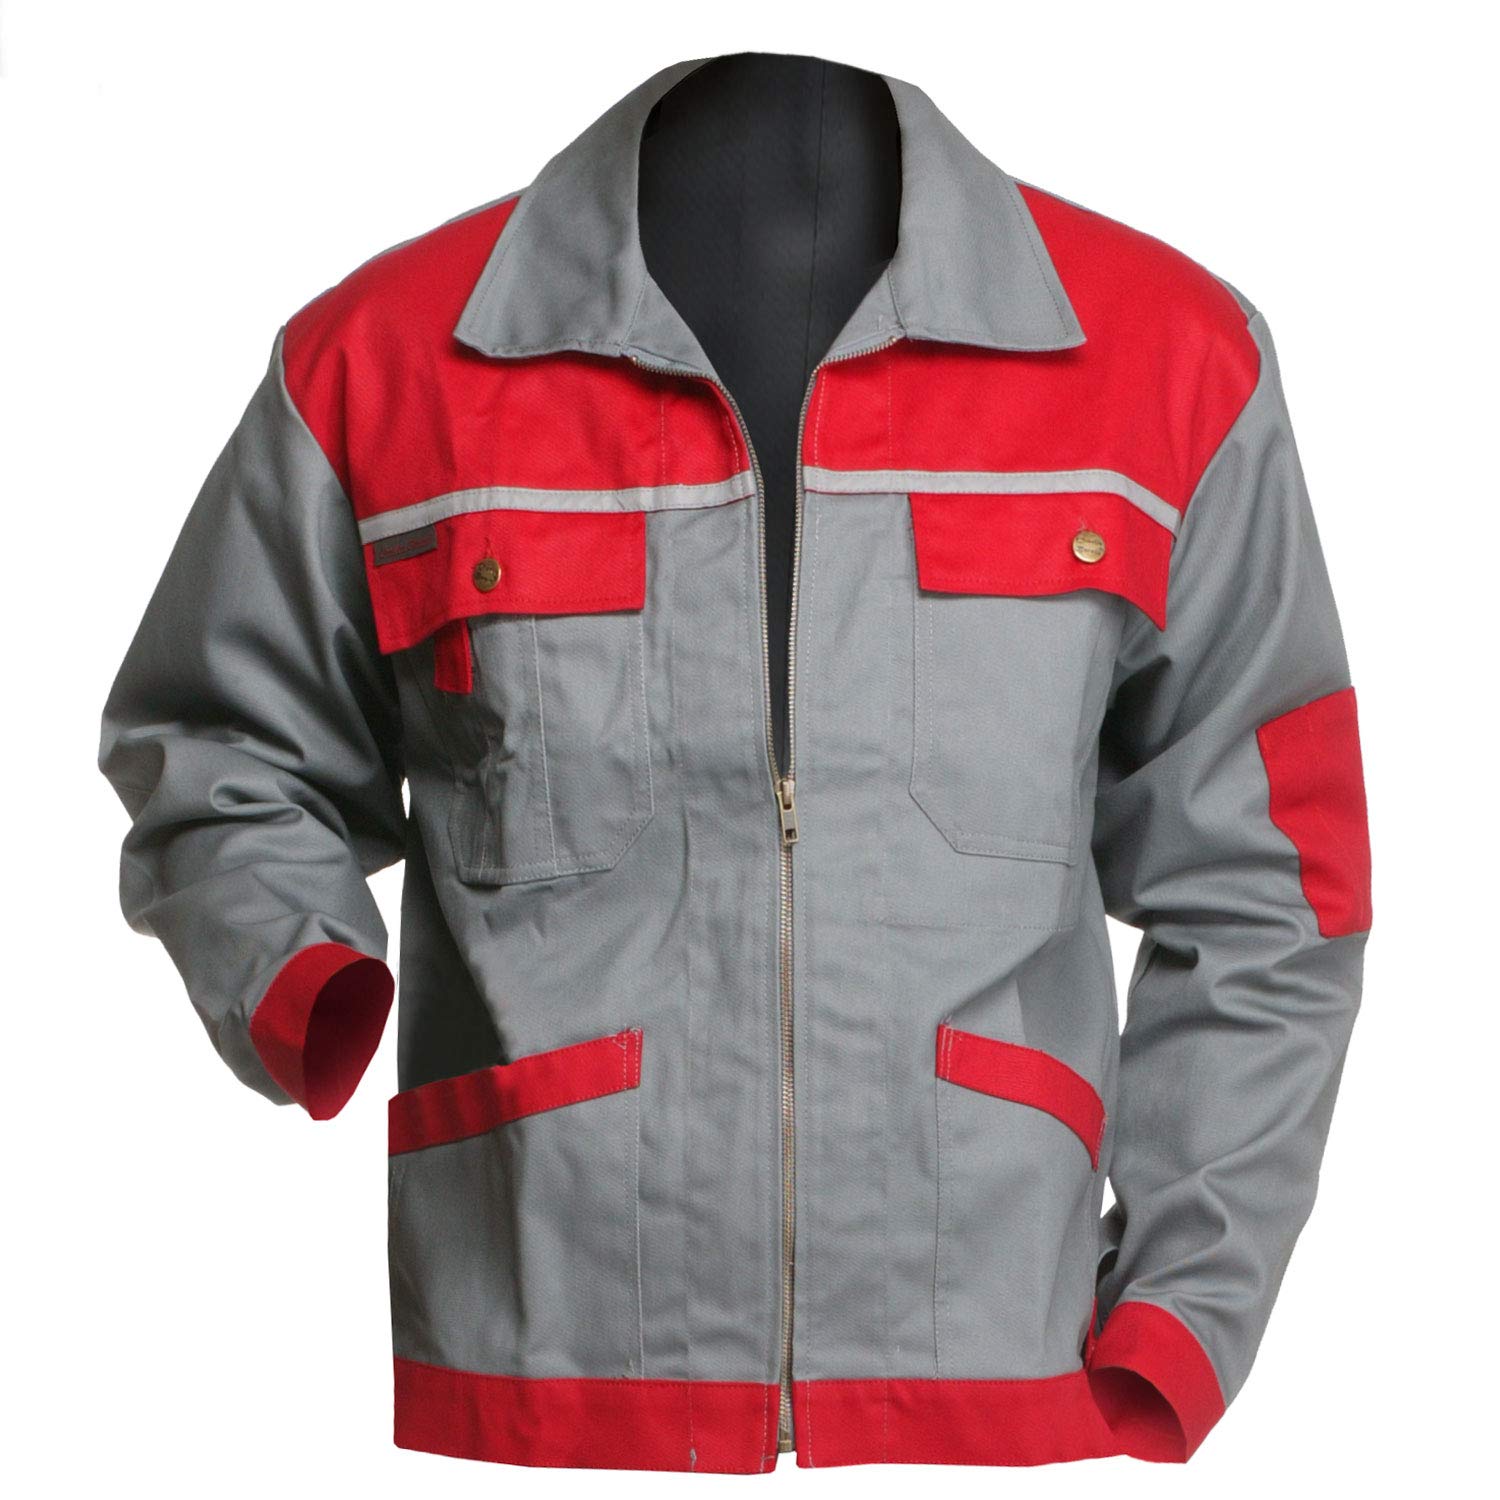 Arbeitsjacke Charlie Barato® Profi Line grau/rot - Jacke für Handwerker Größe 60